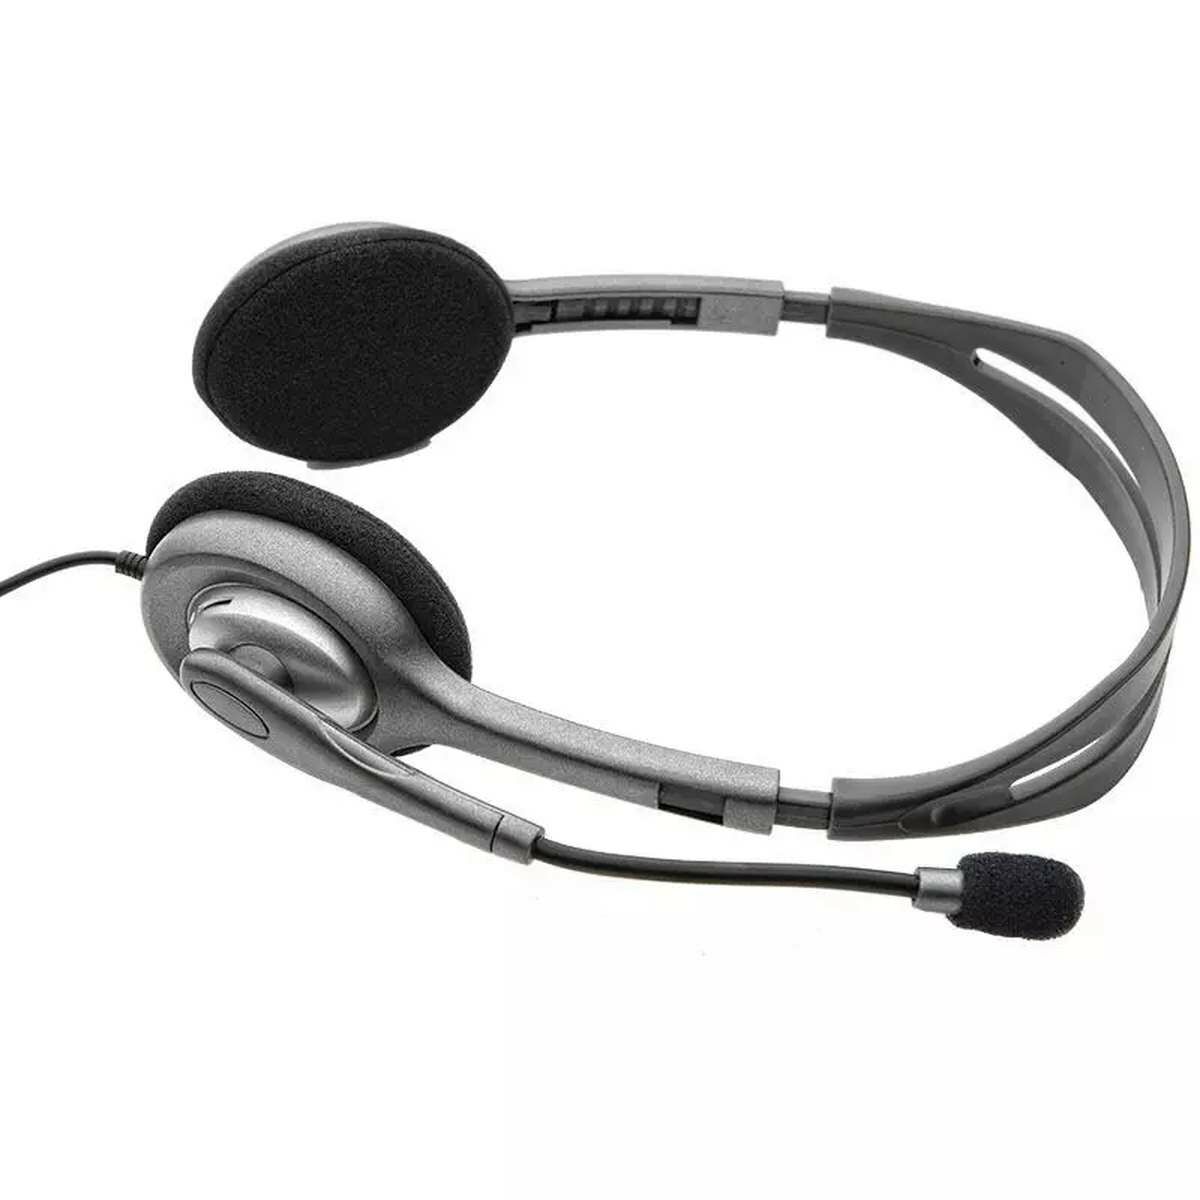 Kép 2/5 - Logitech Headset H110 vezetékes, mikrofonos sztereó fejhallgató duál jack csatlakozóval szürke EU (981-000472)